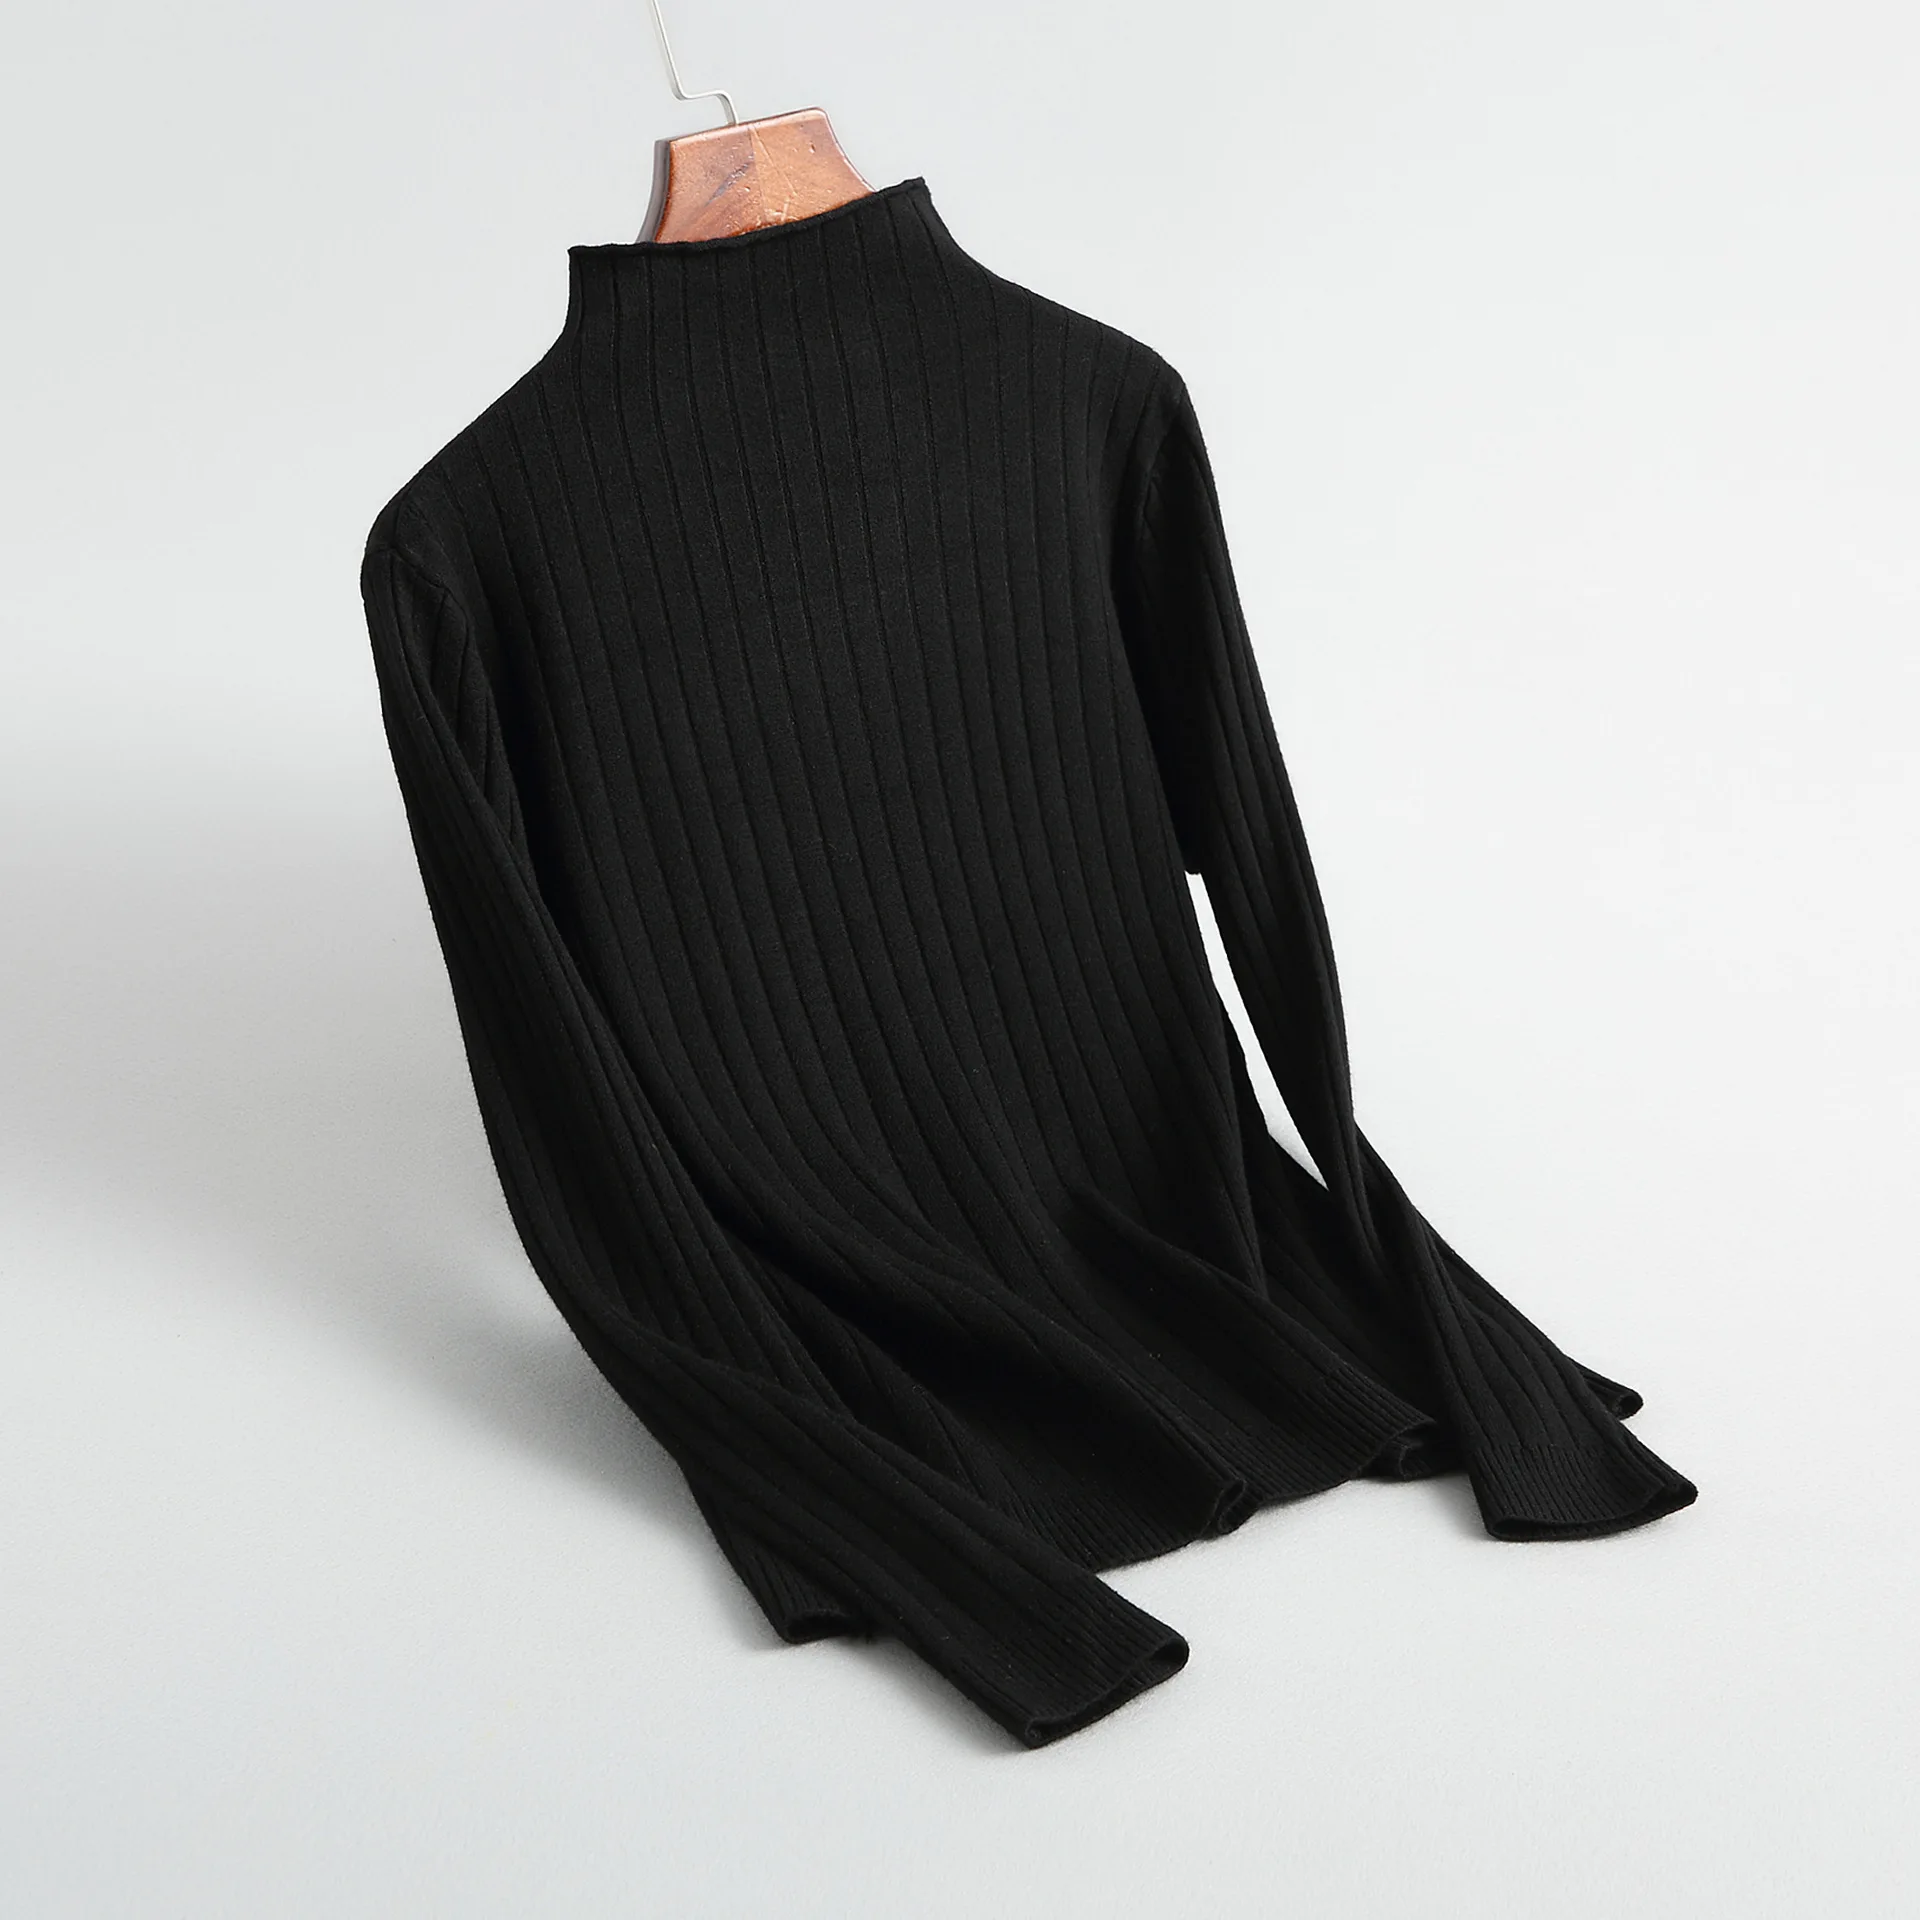 INNASOFAN свитер для женщин осень-зима вязаный свитер Евро-американская мода свитер с воротником средней длины и длинными рукавами